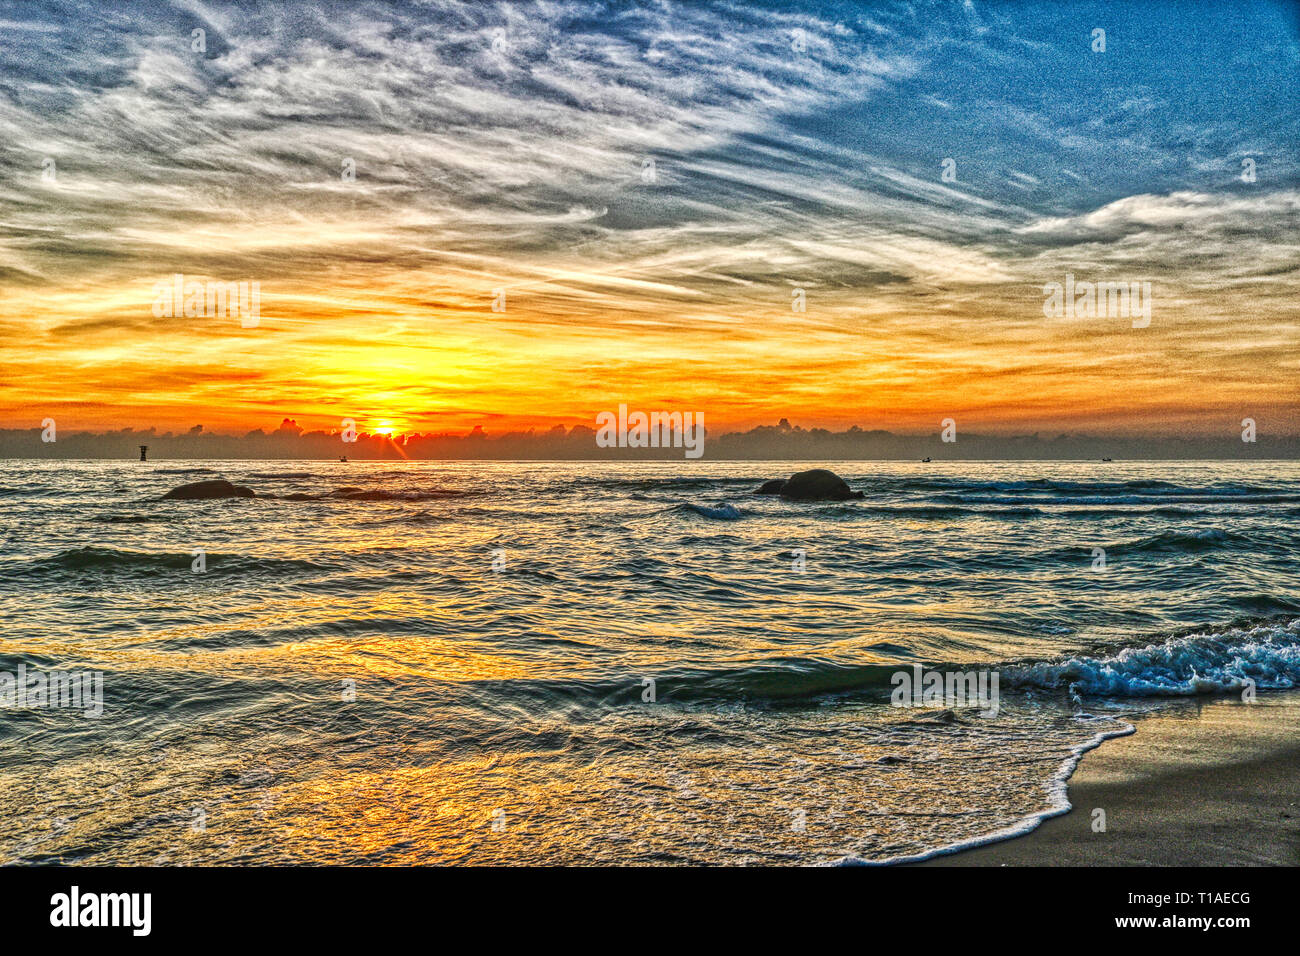 Questa grande mostra fotografica Il sunrise di Hua Hin in Thailandia la mattina presto a sunrise. Si può vedere molto bene la costa del golfo di Thailandia Foto Stock